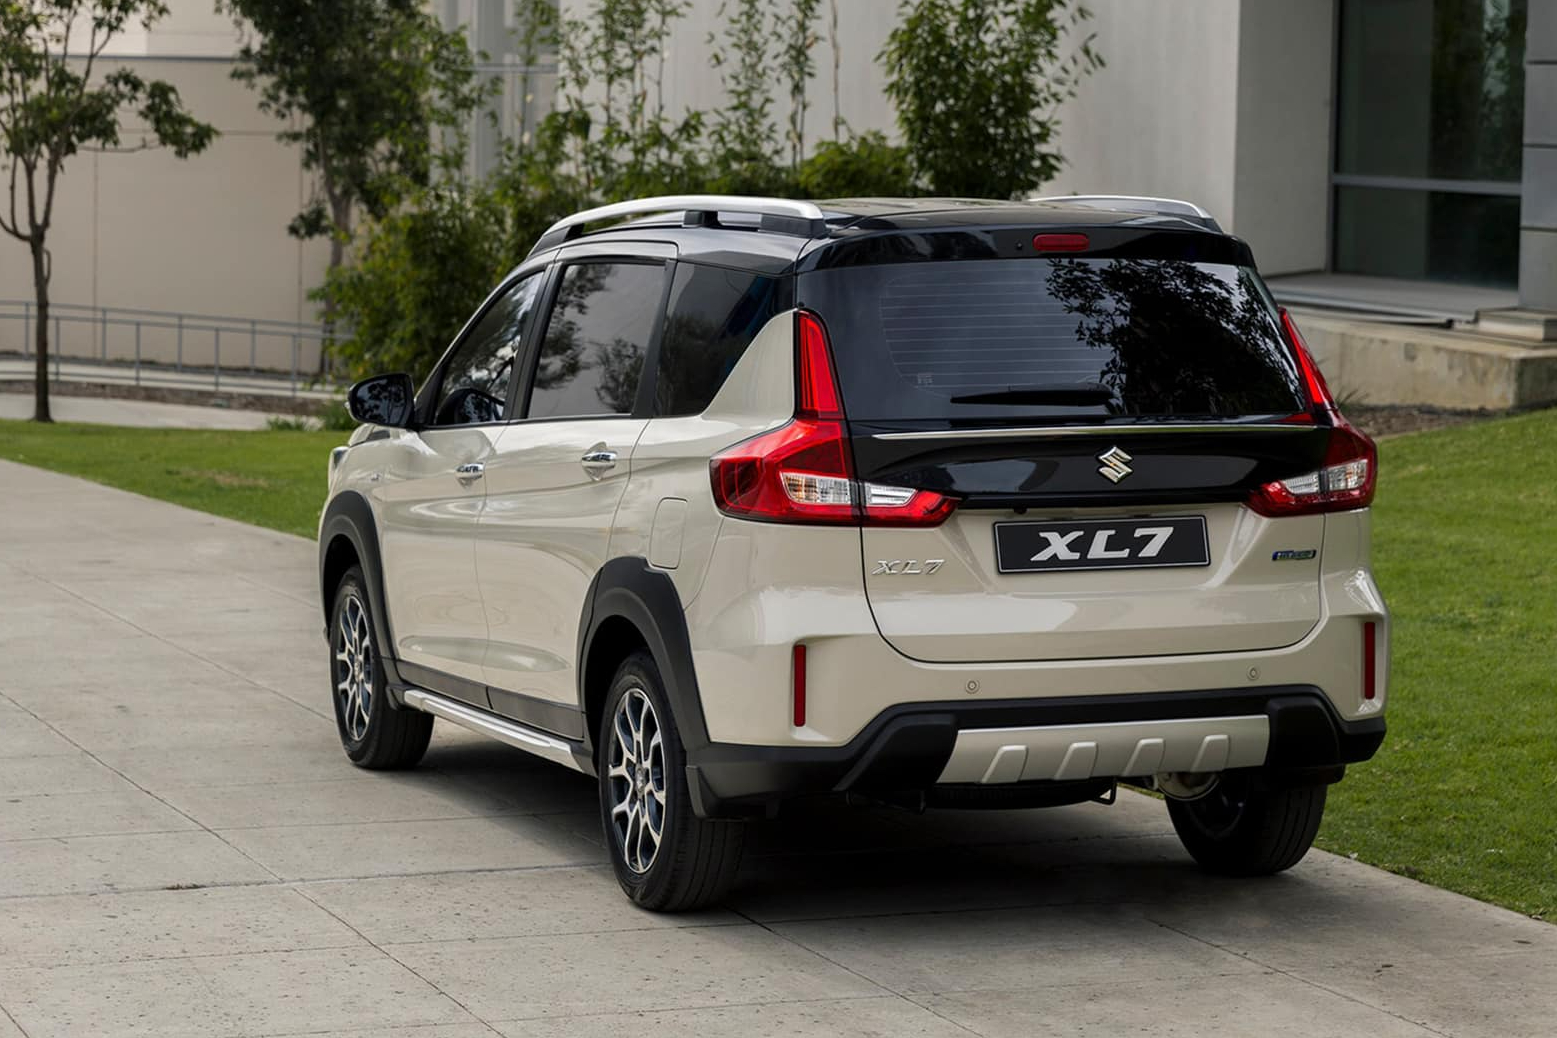 Loạt xe dự kiến ra mắt Việt Nam tháng 7: Suzuki XL7 hứa hẹn 'lợi hại hơn xưa', Ford Transit khuấy động phân khúc xe van- Ảnh 7.